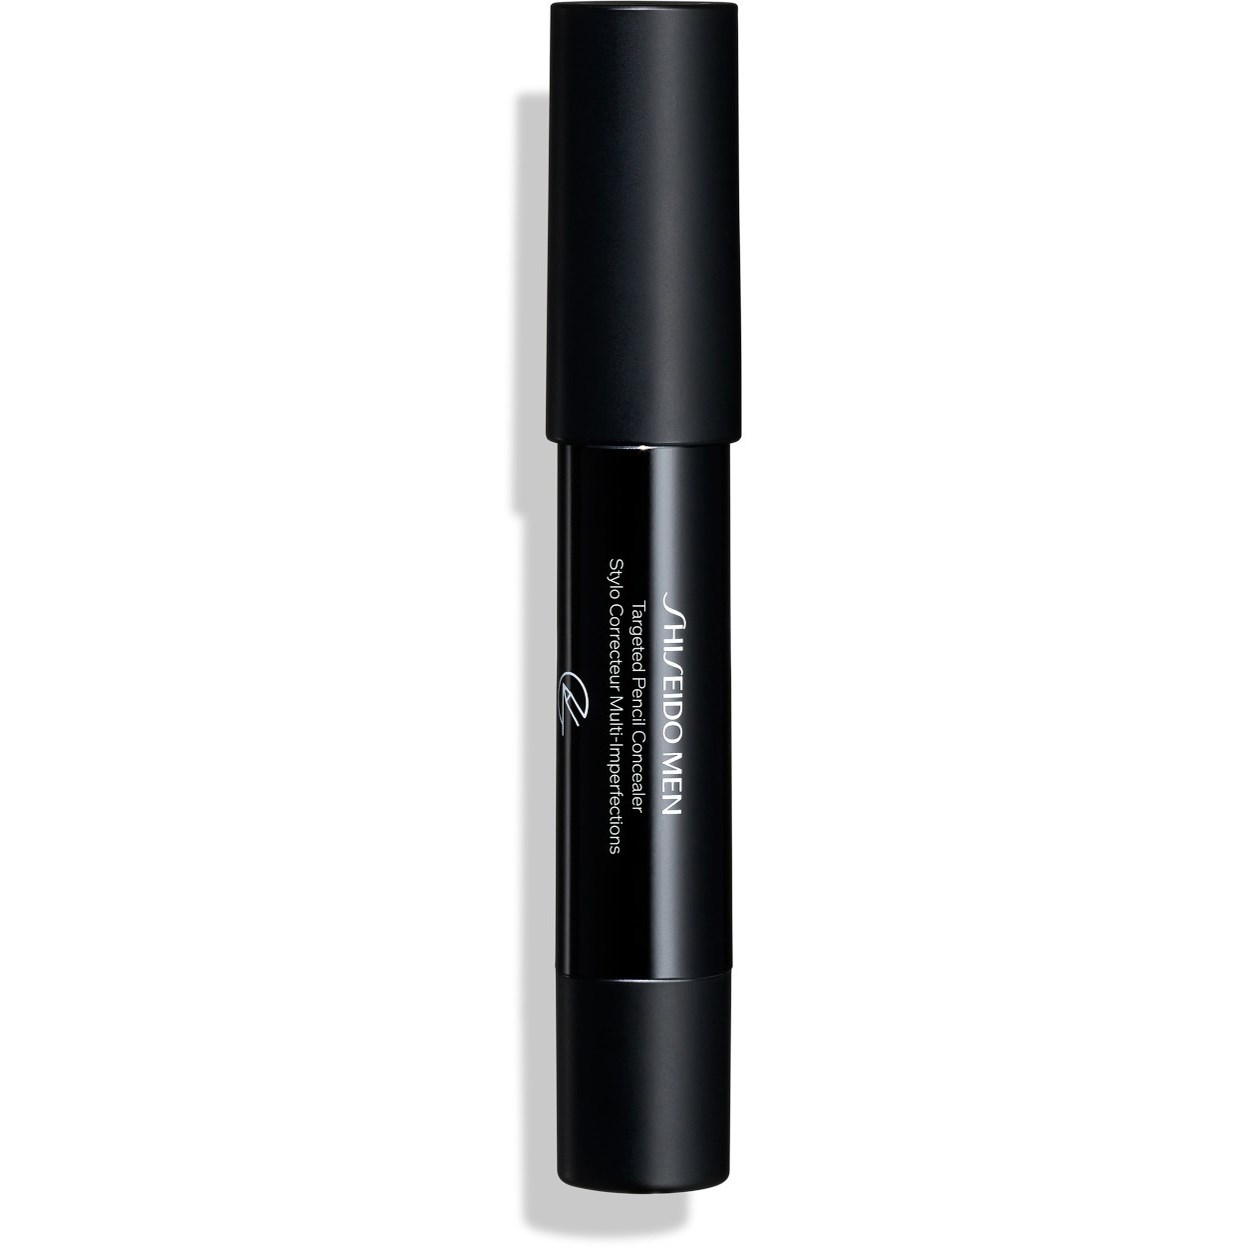 Shiseido MEN Instant Targeted Correction Pencil Concealer Light